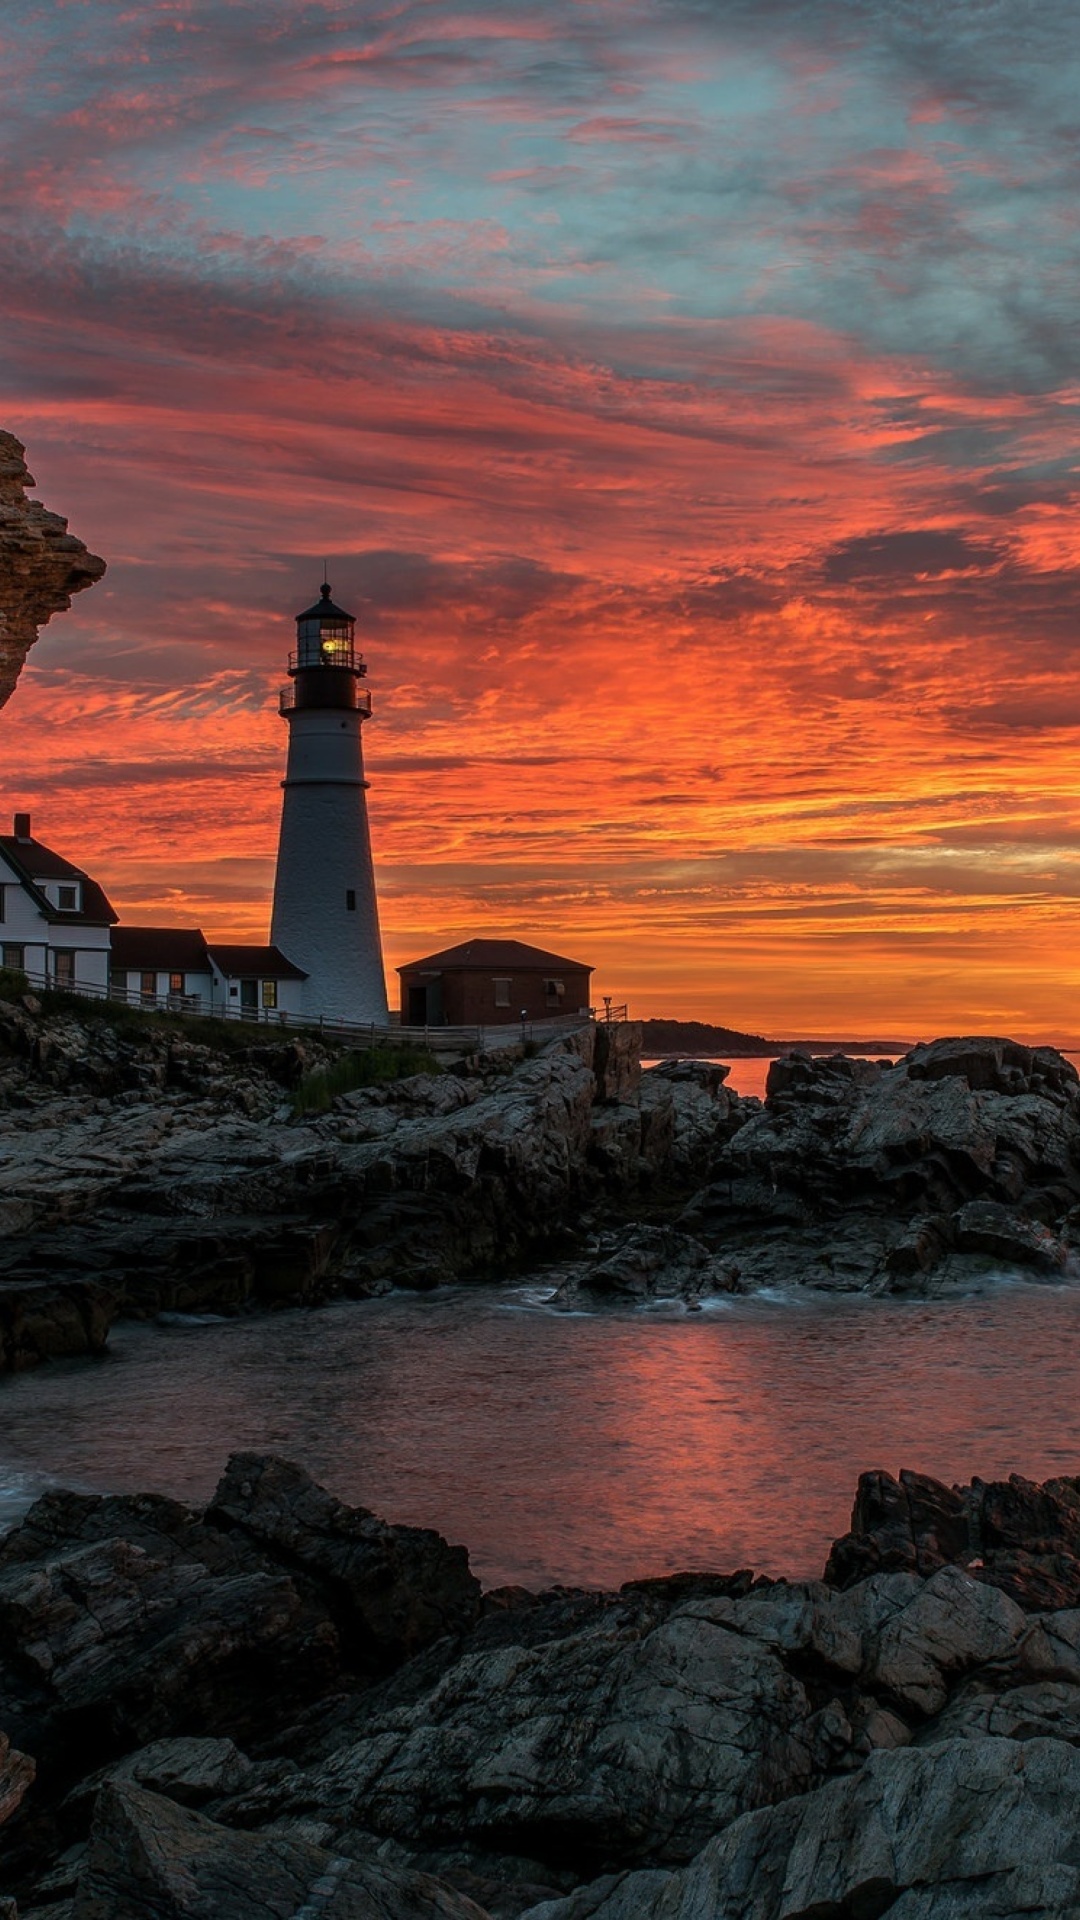 Обои Sunset and lighthouse 1080x1920